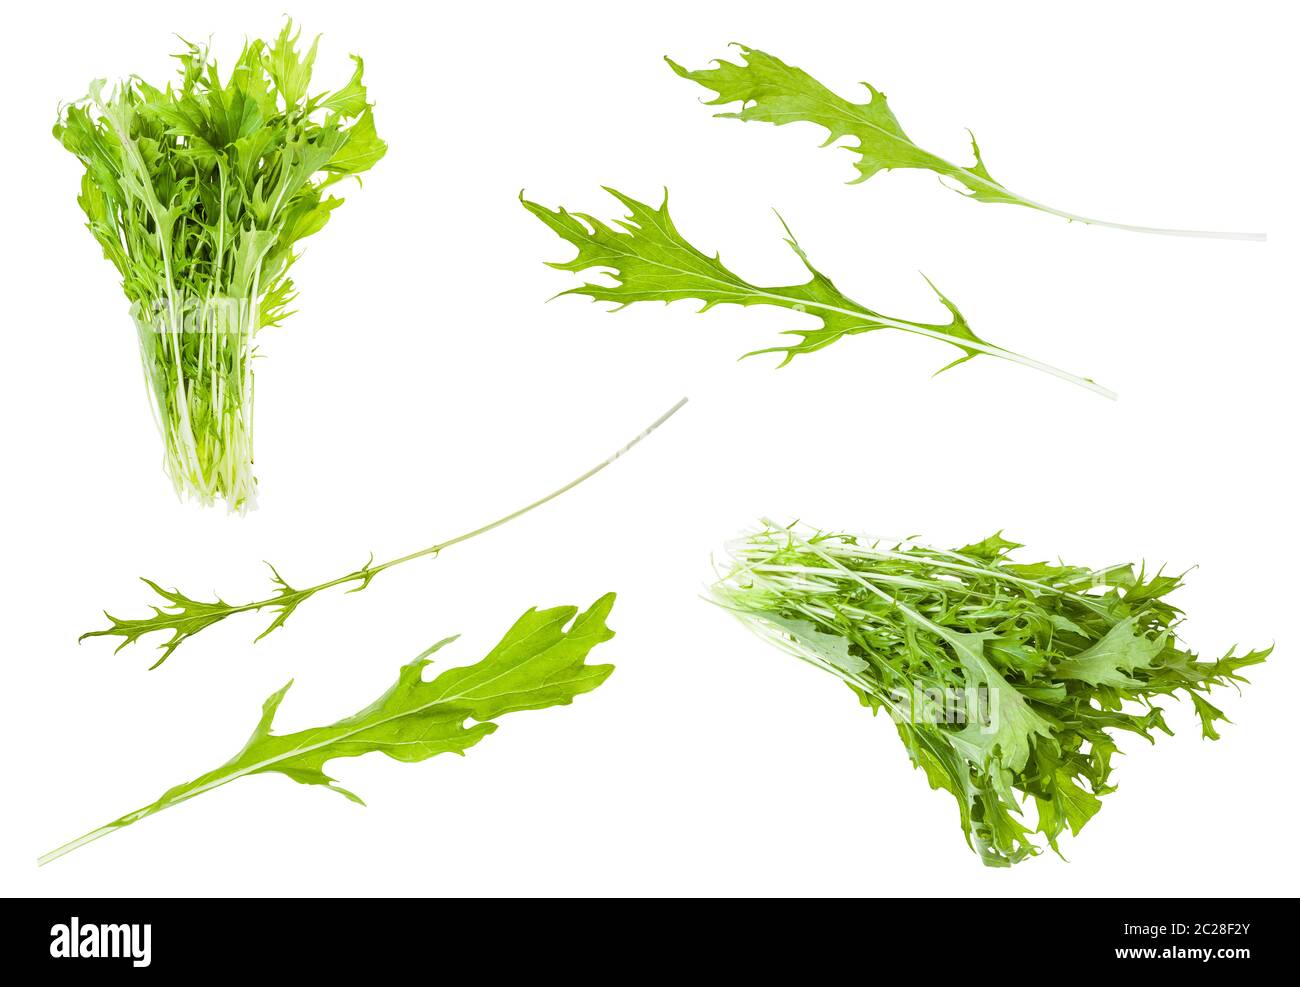 Verschiedene Blätter und Trauben der japanischen Blatt Kohl mizuna (Brassica rapa subsp nipposinica var Baumannii) Pflanze isoliert auf weißem Hintergrund Stockfoto